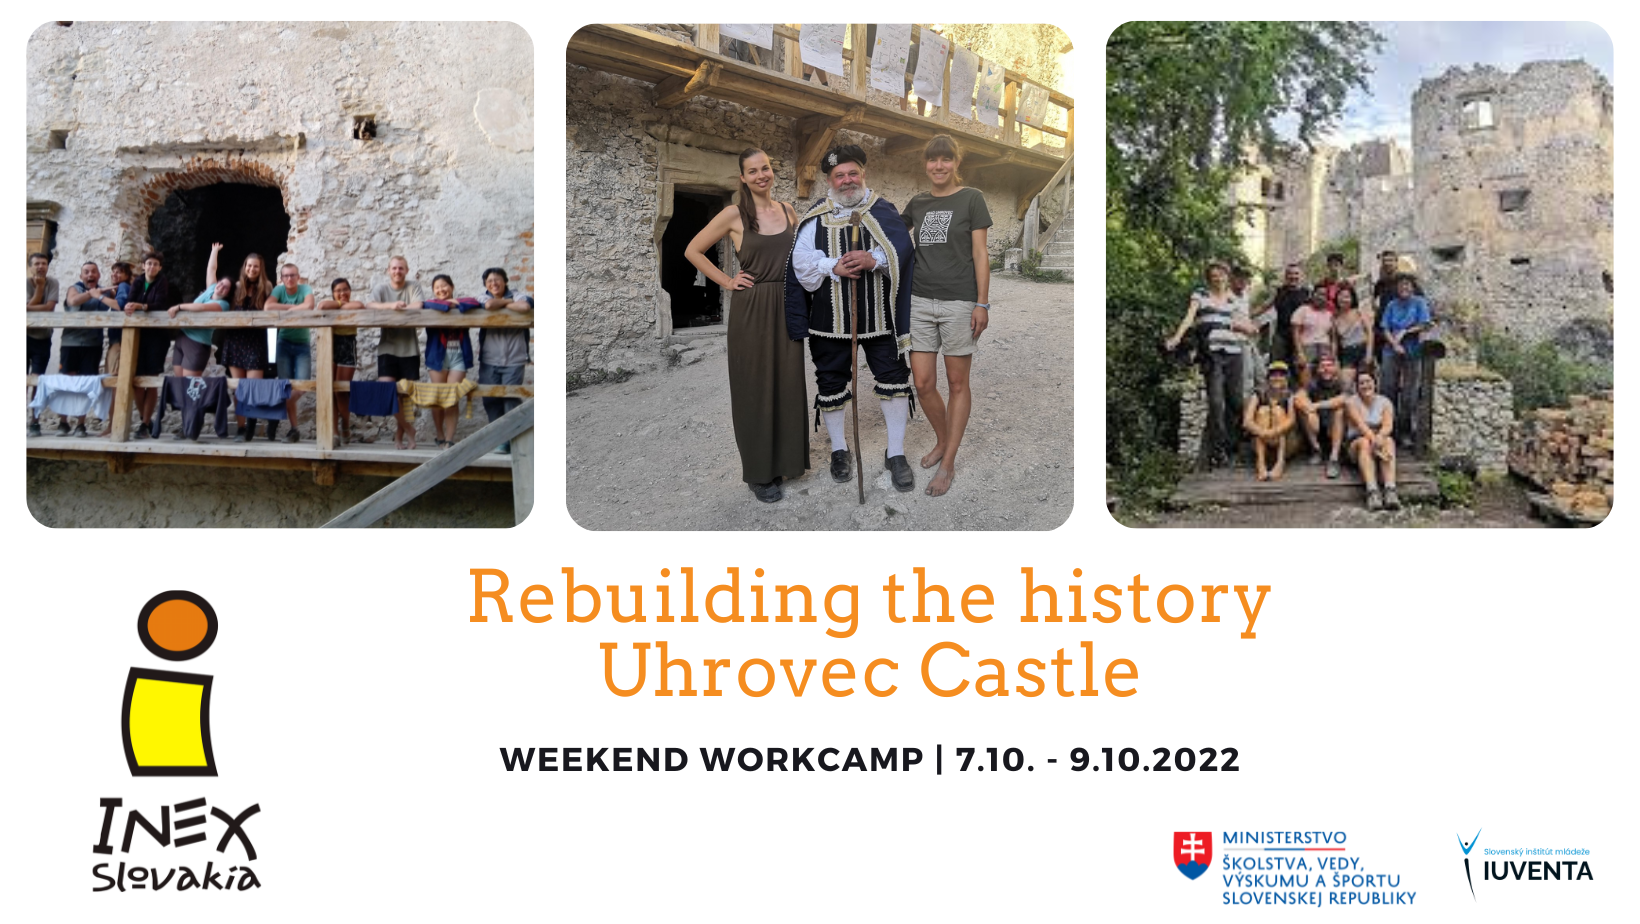 uhrovec castle weekend workcamp 2022